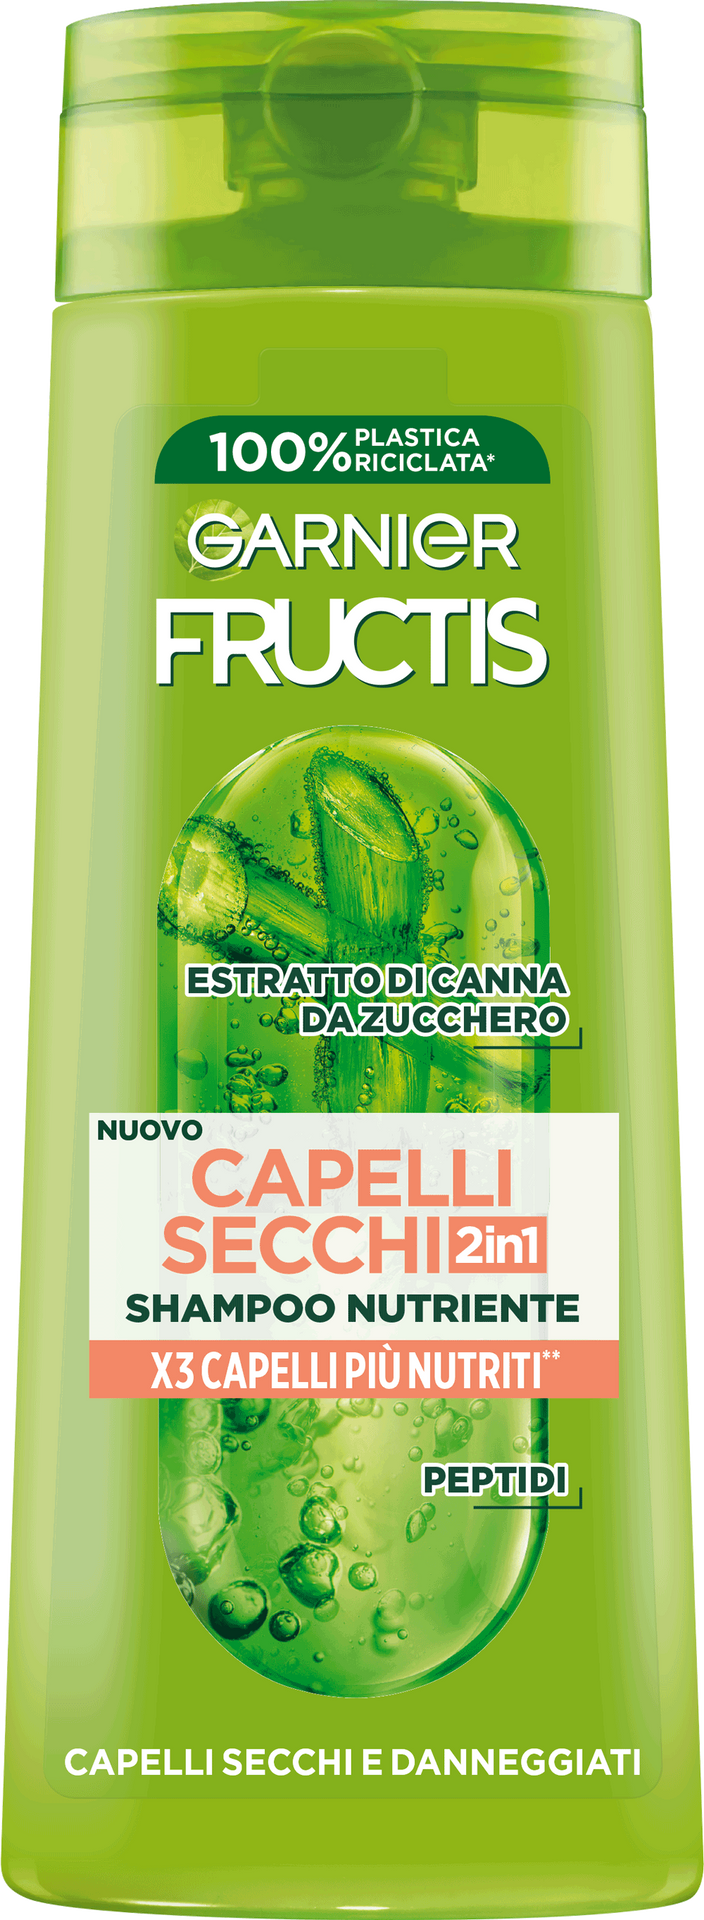 shampoo fructis capelli secchi 2in1